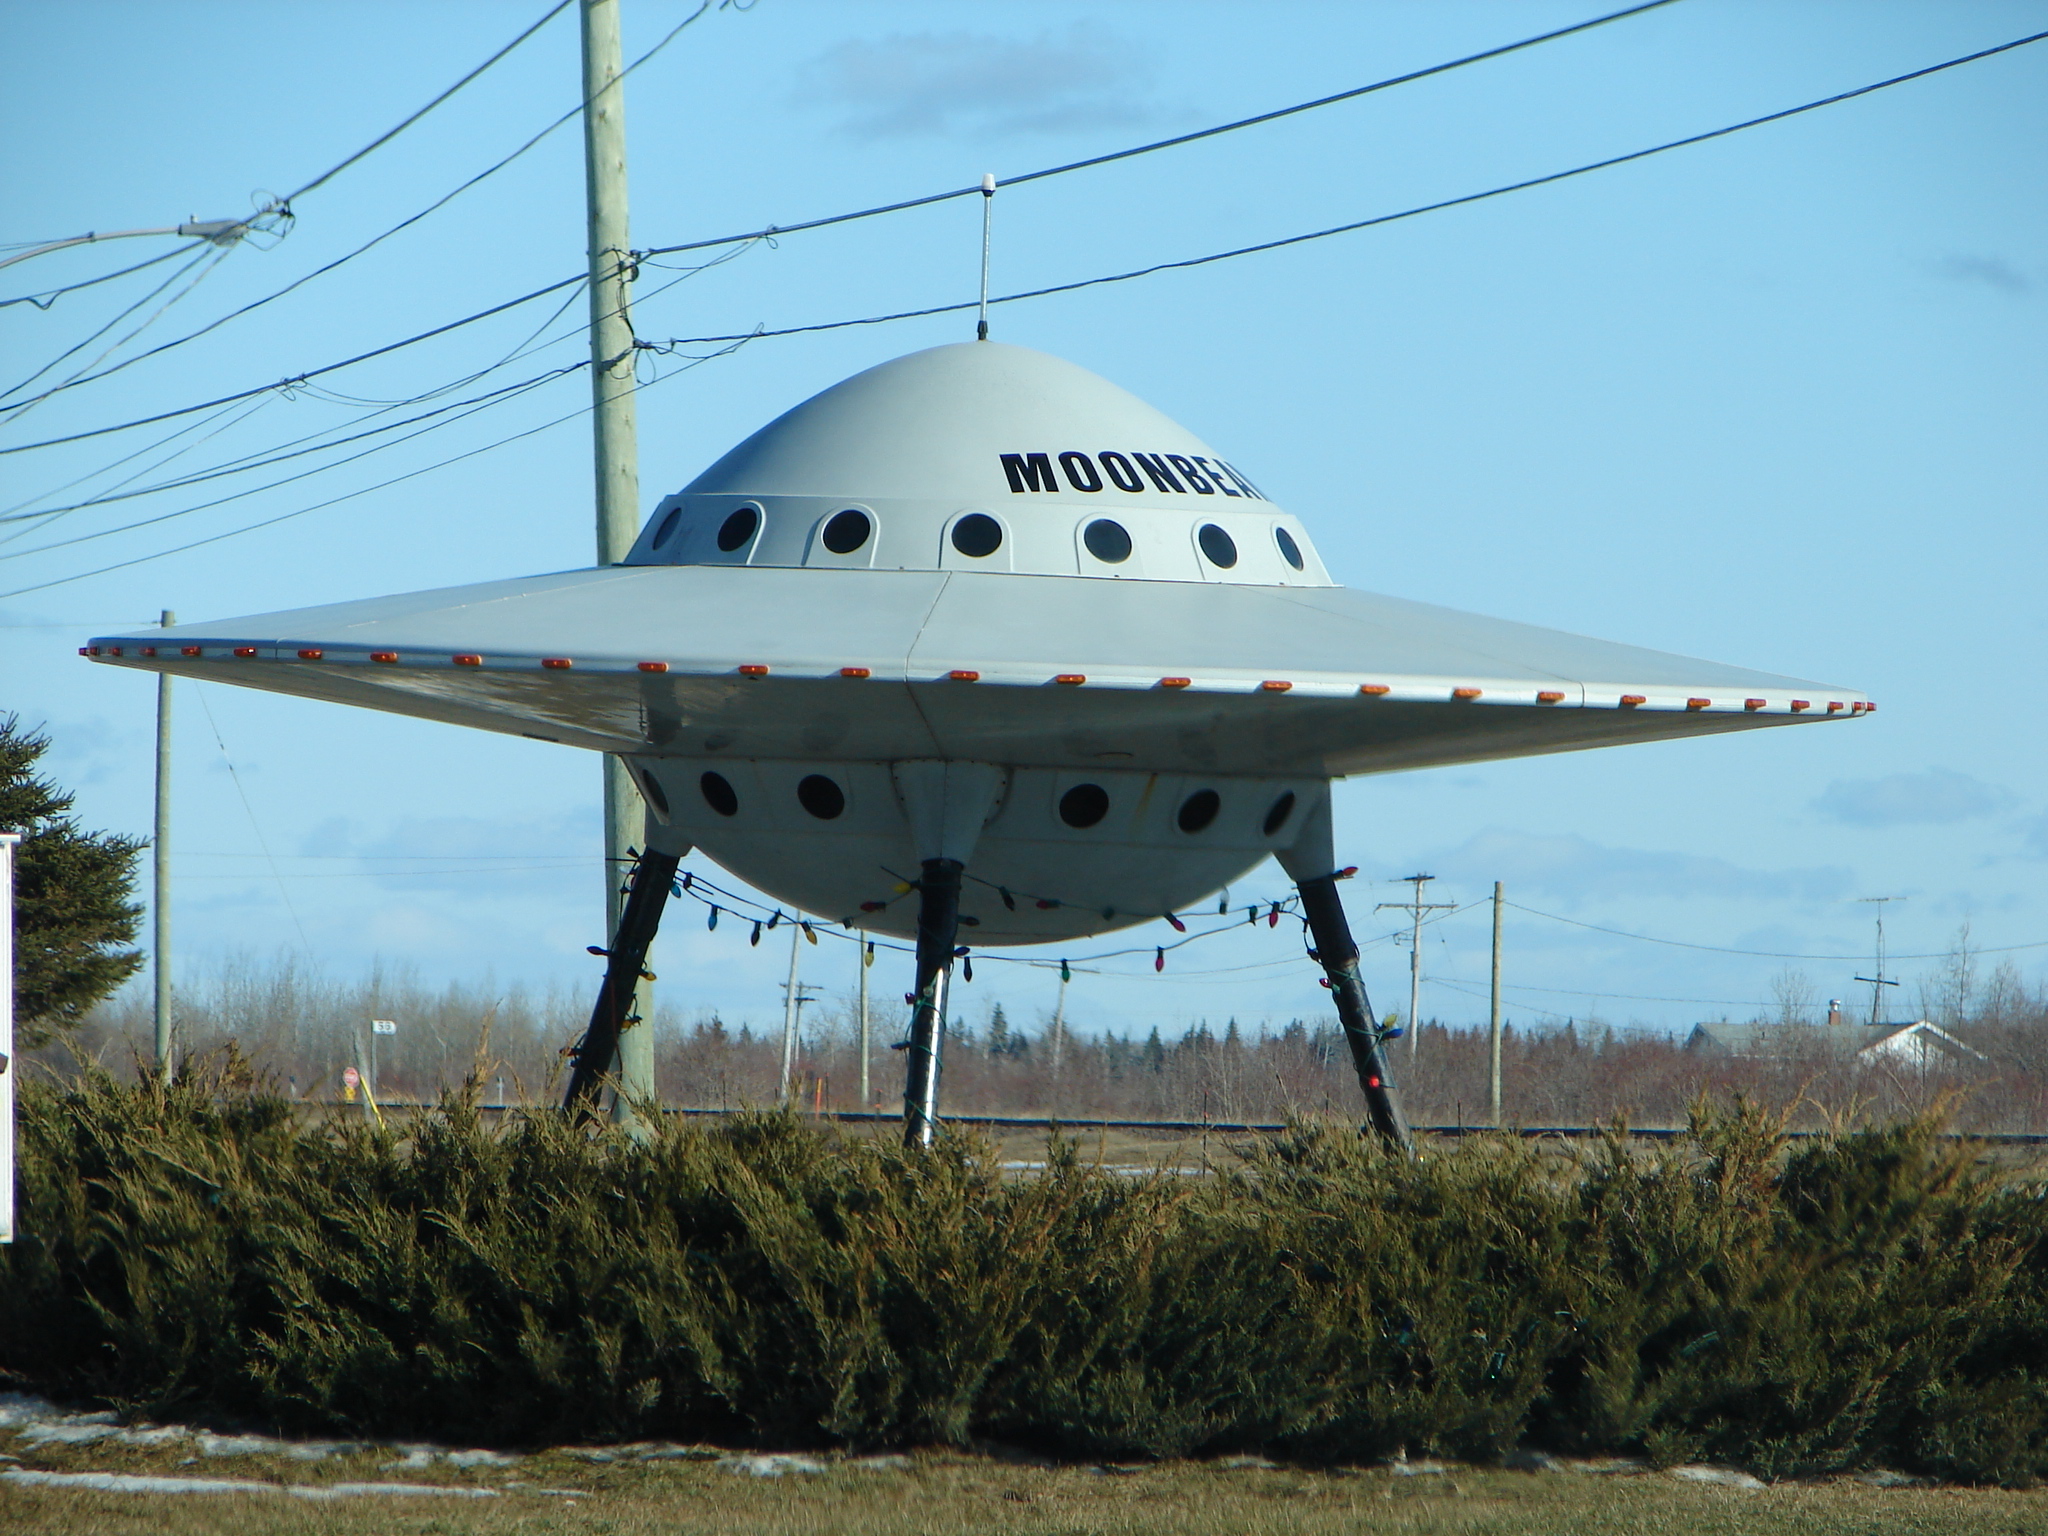 Images Wikimedia Commons/P199 Moonbeam_UFO.jpg